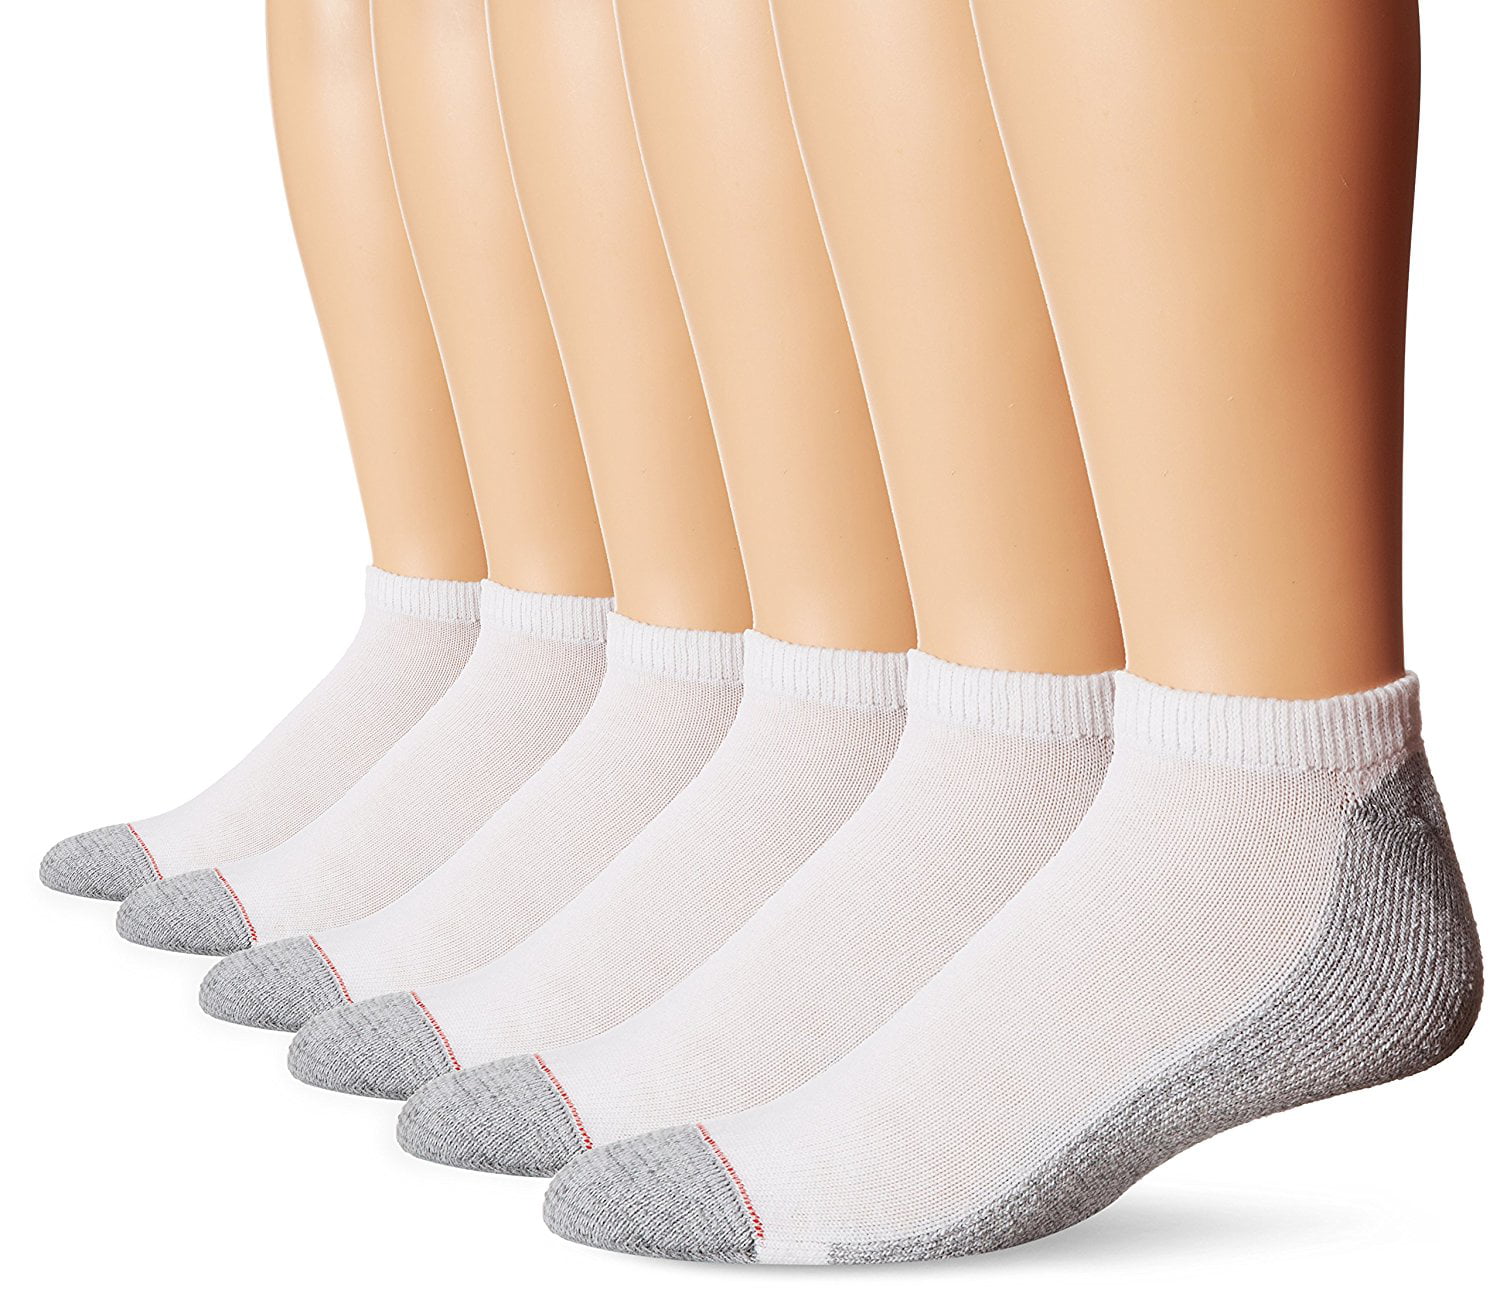 Hanes - Men's No Show Socks, 6 Pack - Walmart.com - Walmart.com